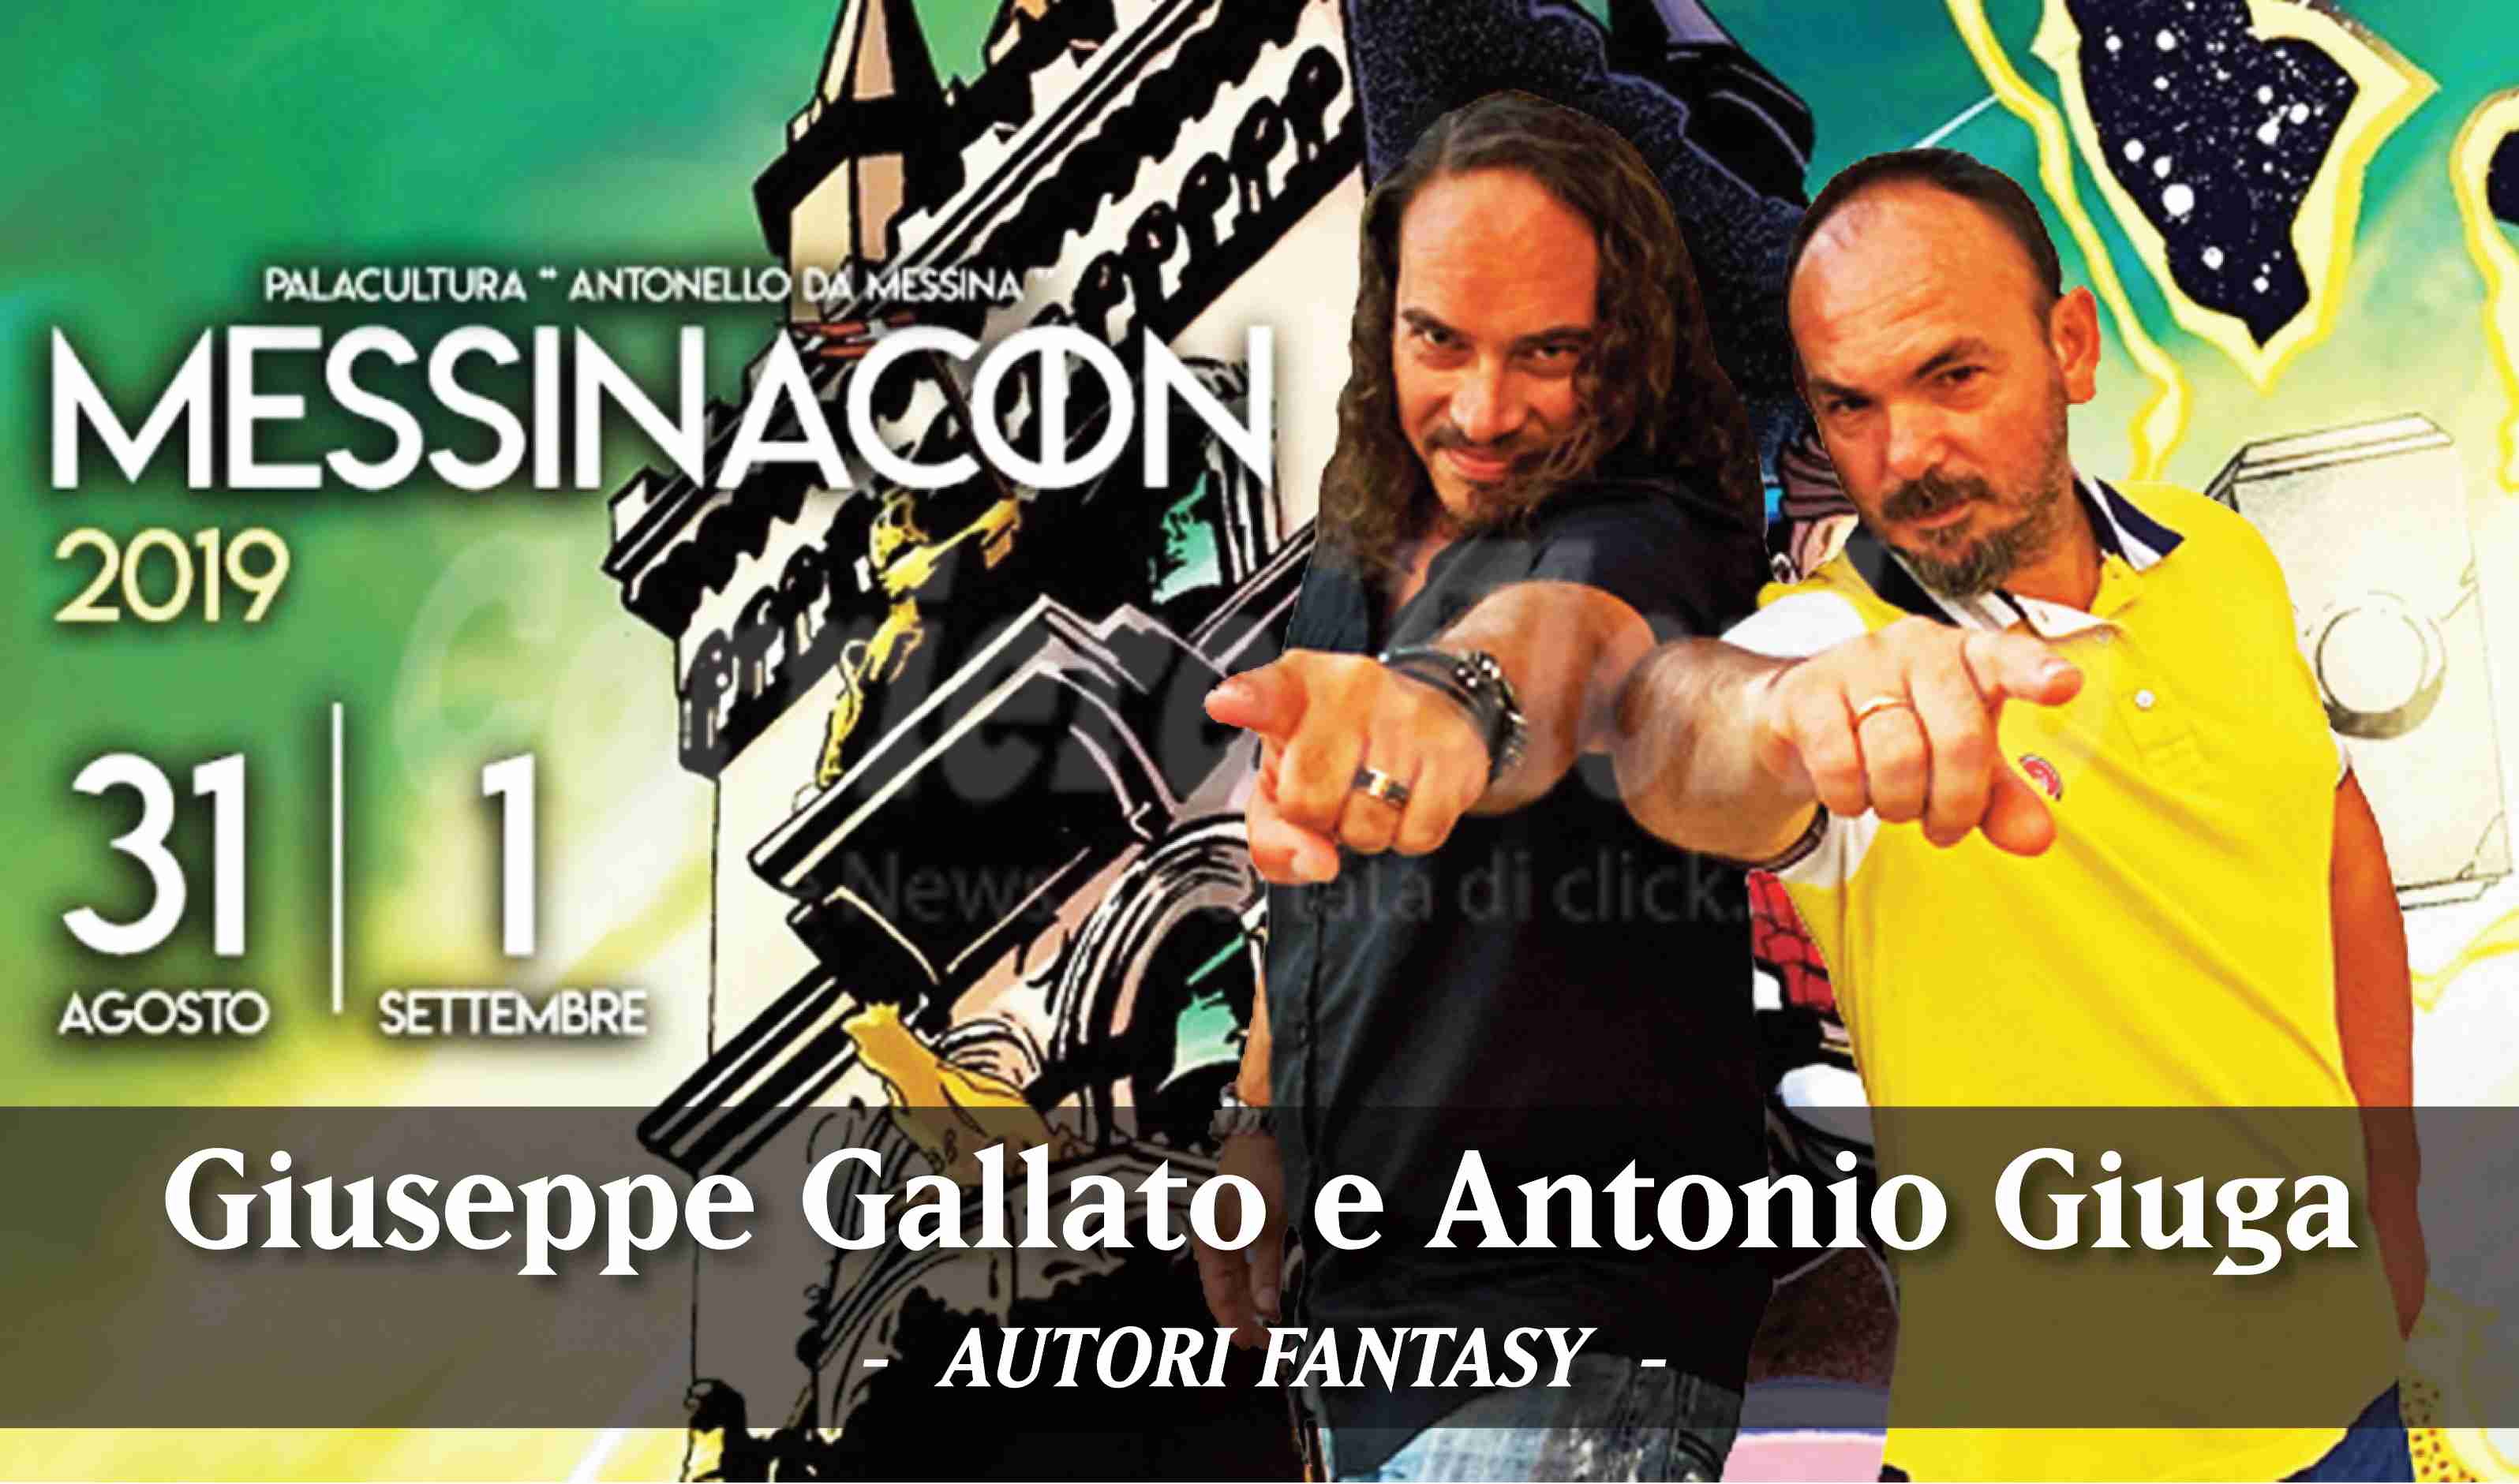 Gli autori fantasy Giuseppe Gallato e Antonio Giuga al “MessinaCon 2019”